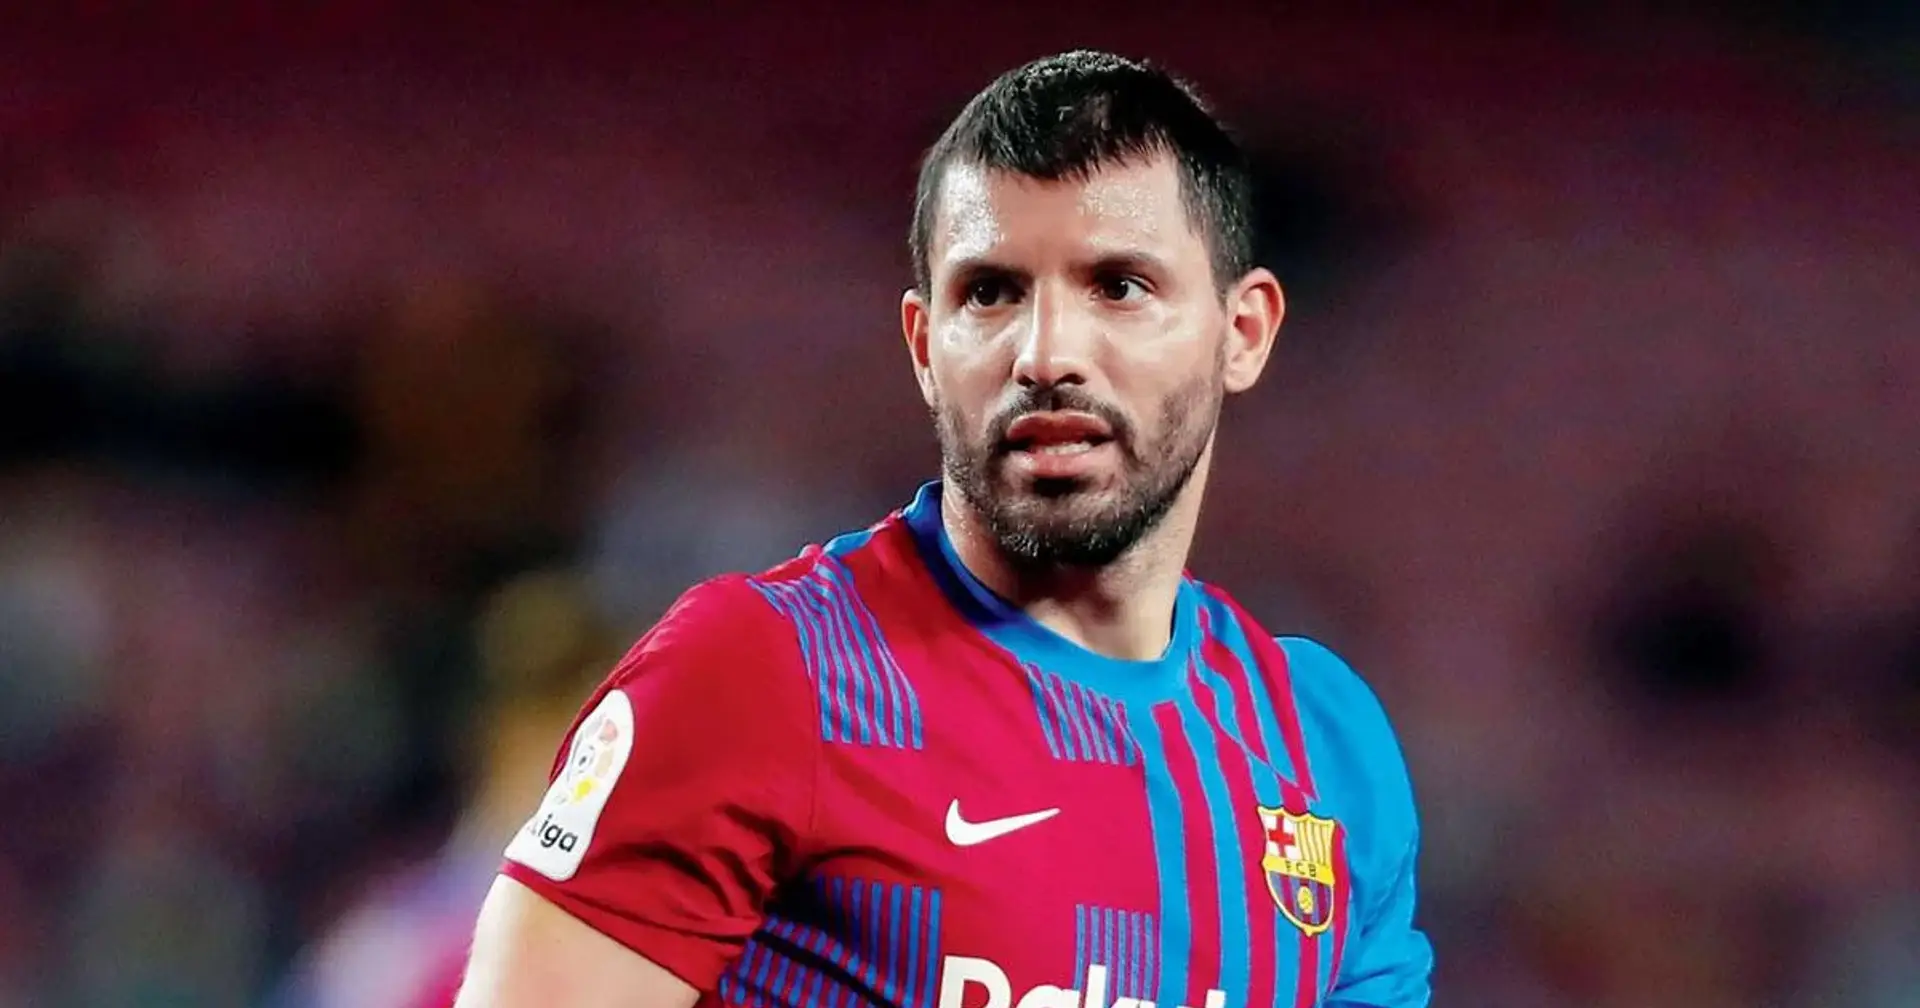 "Ich habe bereits mit dem Training begonnen": Agüero wird diesen Monat für Barcelona spielen - aber es gibt ein Problem